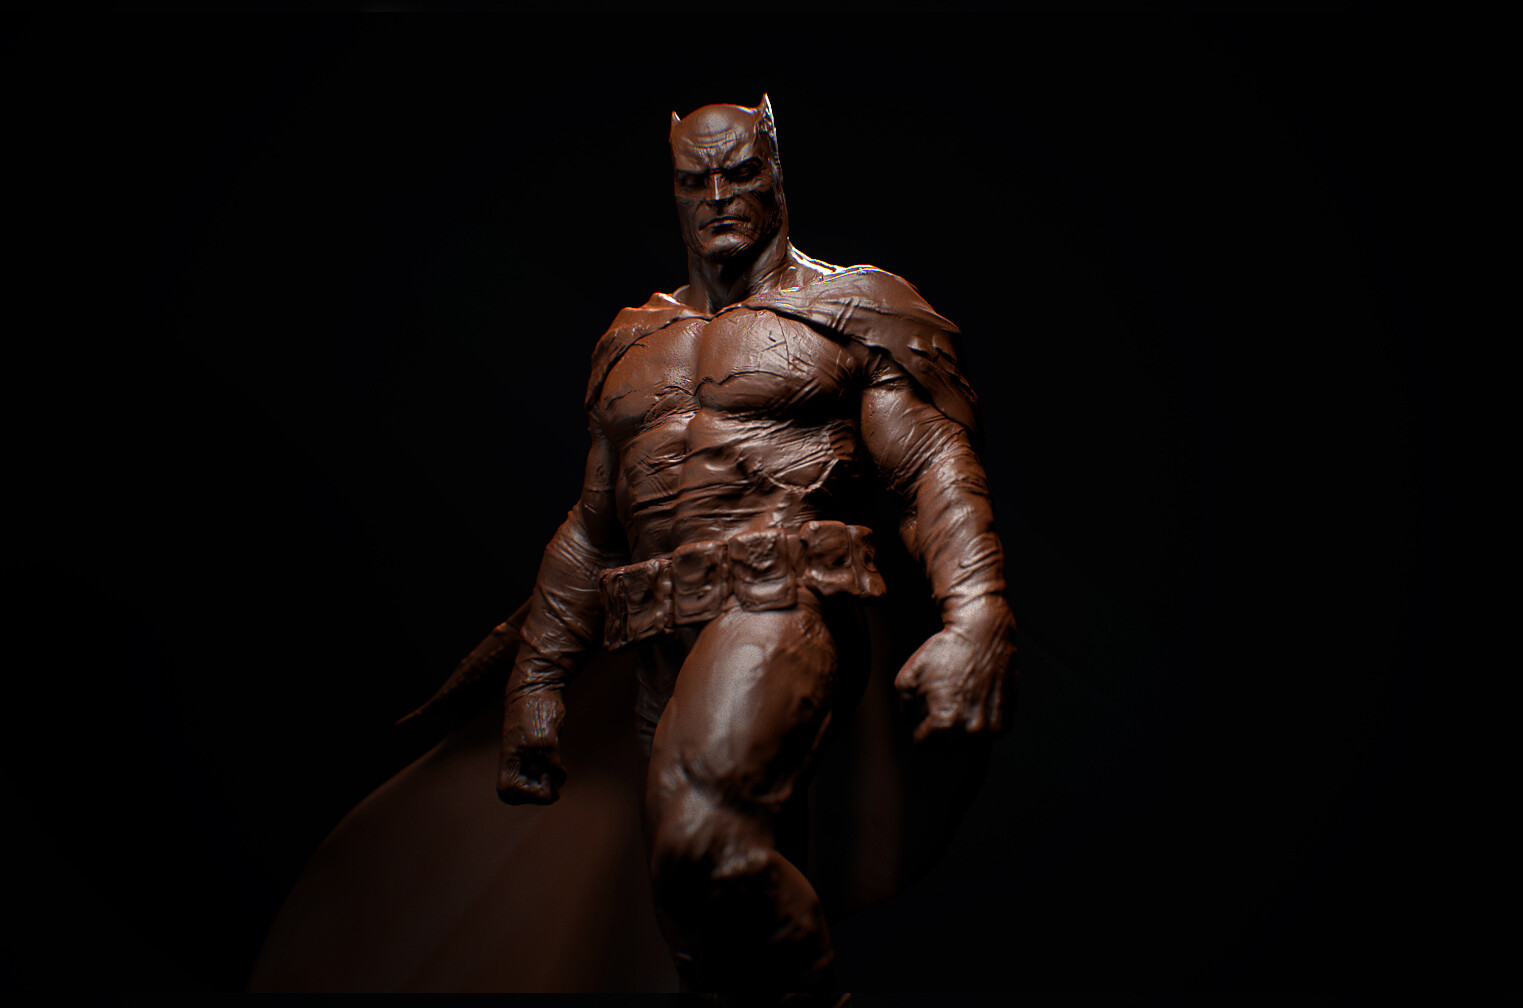 Batman The Dark Knight Artwork Digital 1523x1008